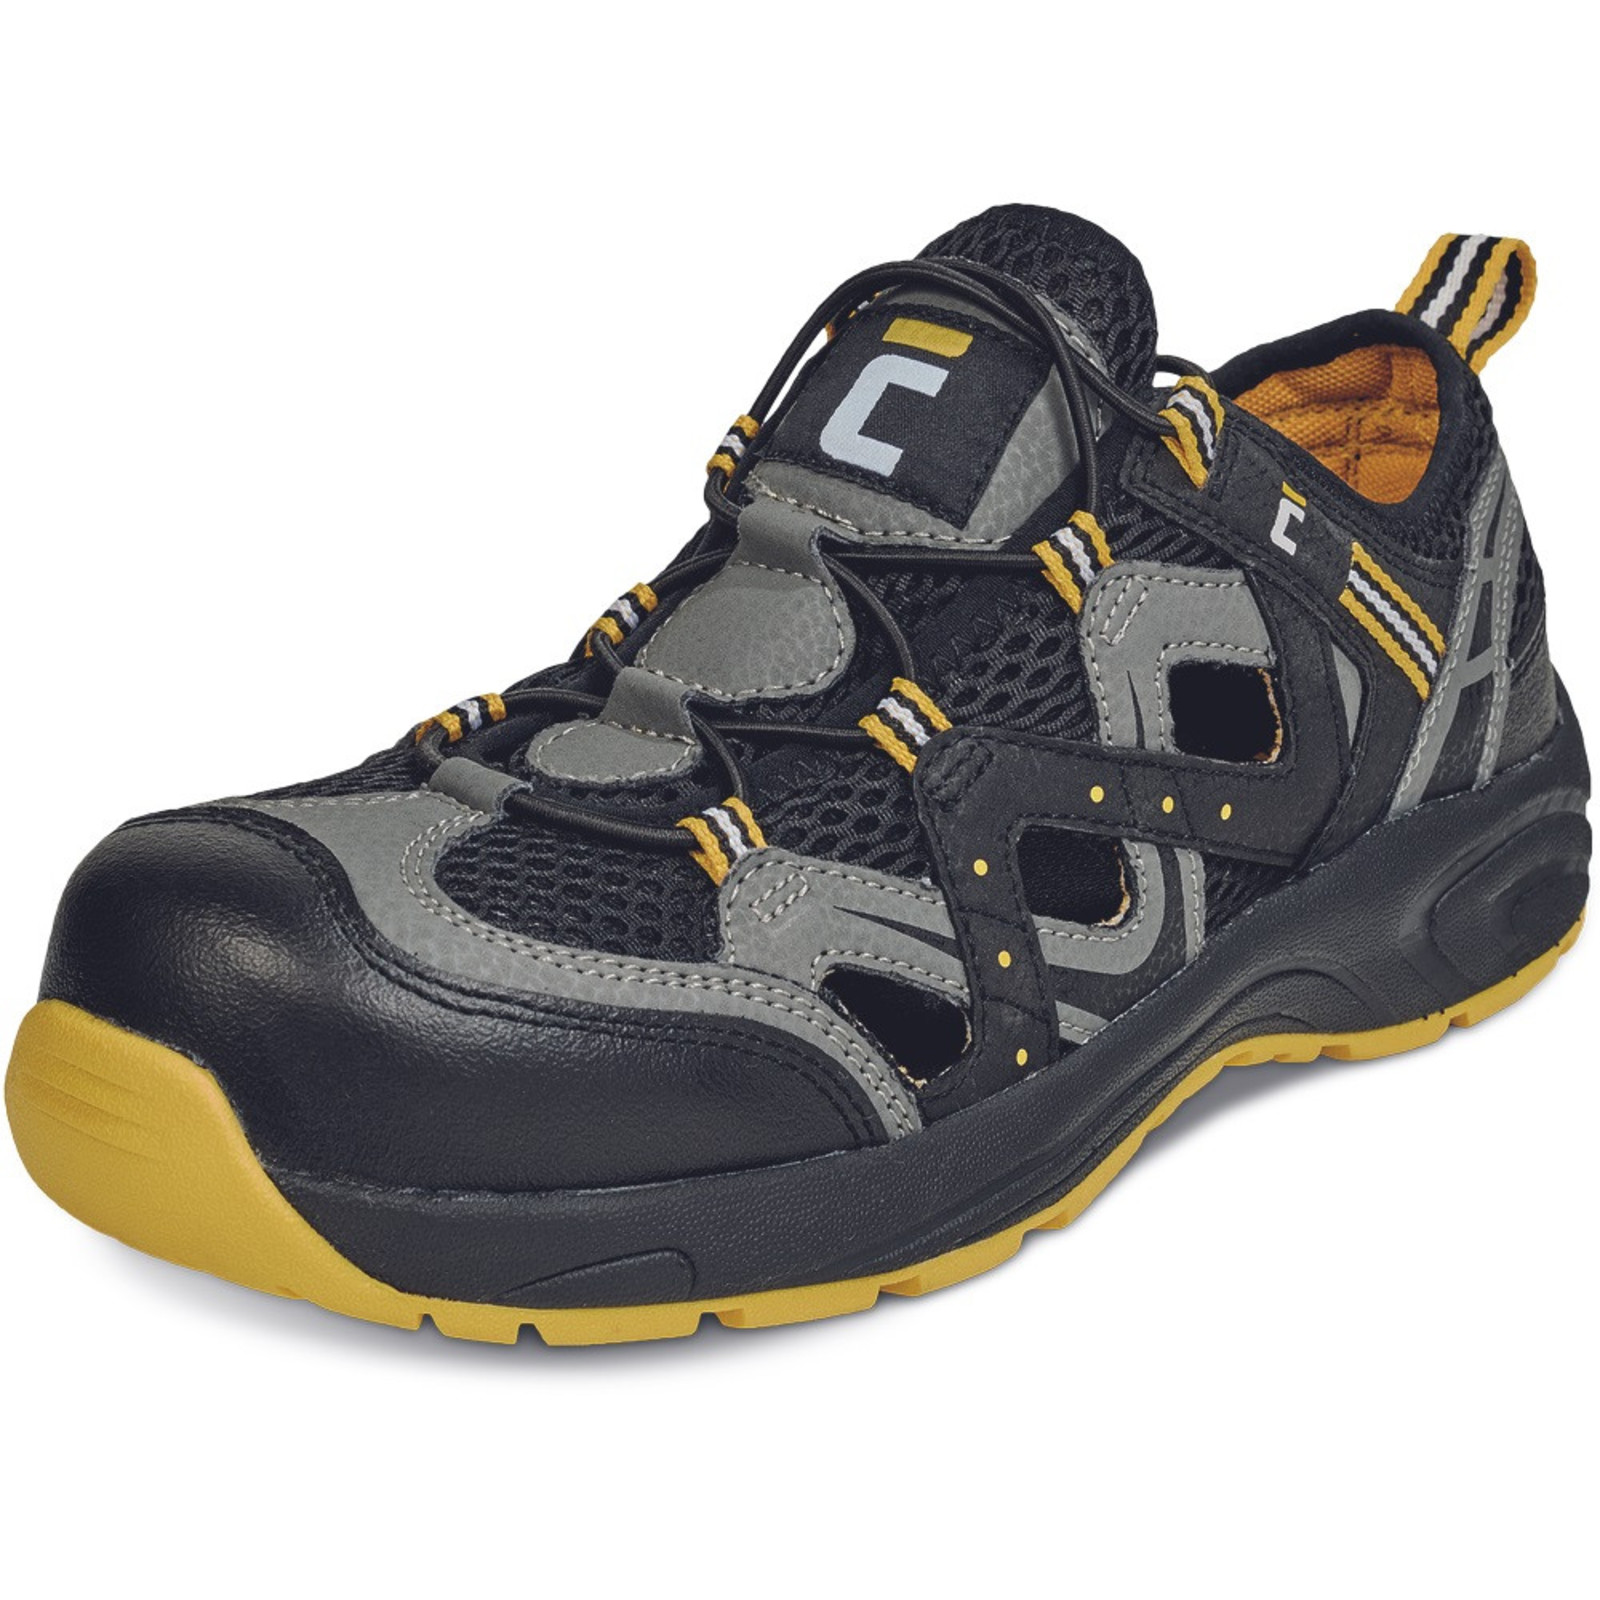 Bezpečnostné sandále Cerva Henford MF S1 SRC - veľkosť: 36, farba: čierna/žltá